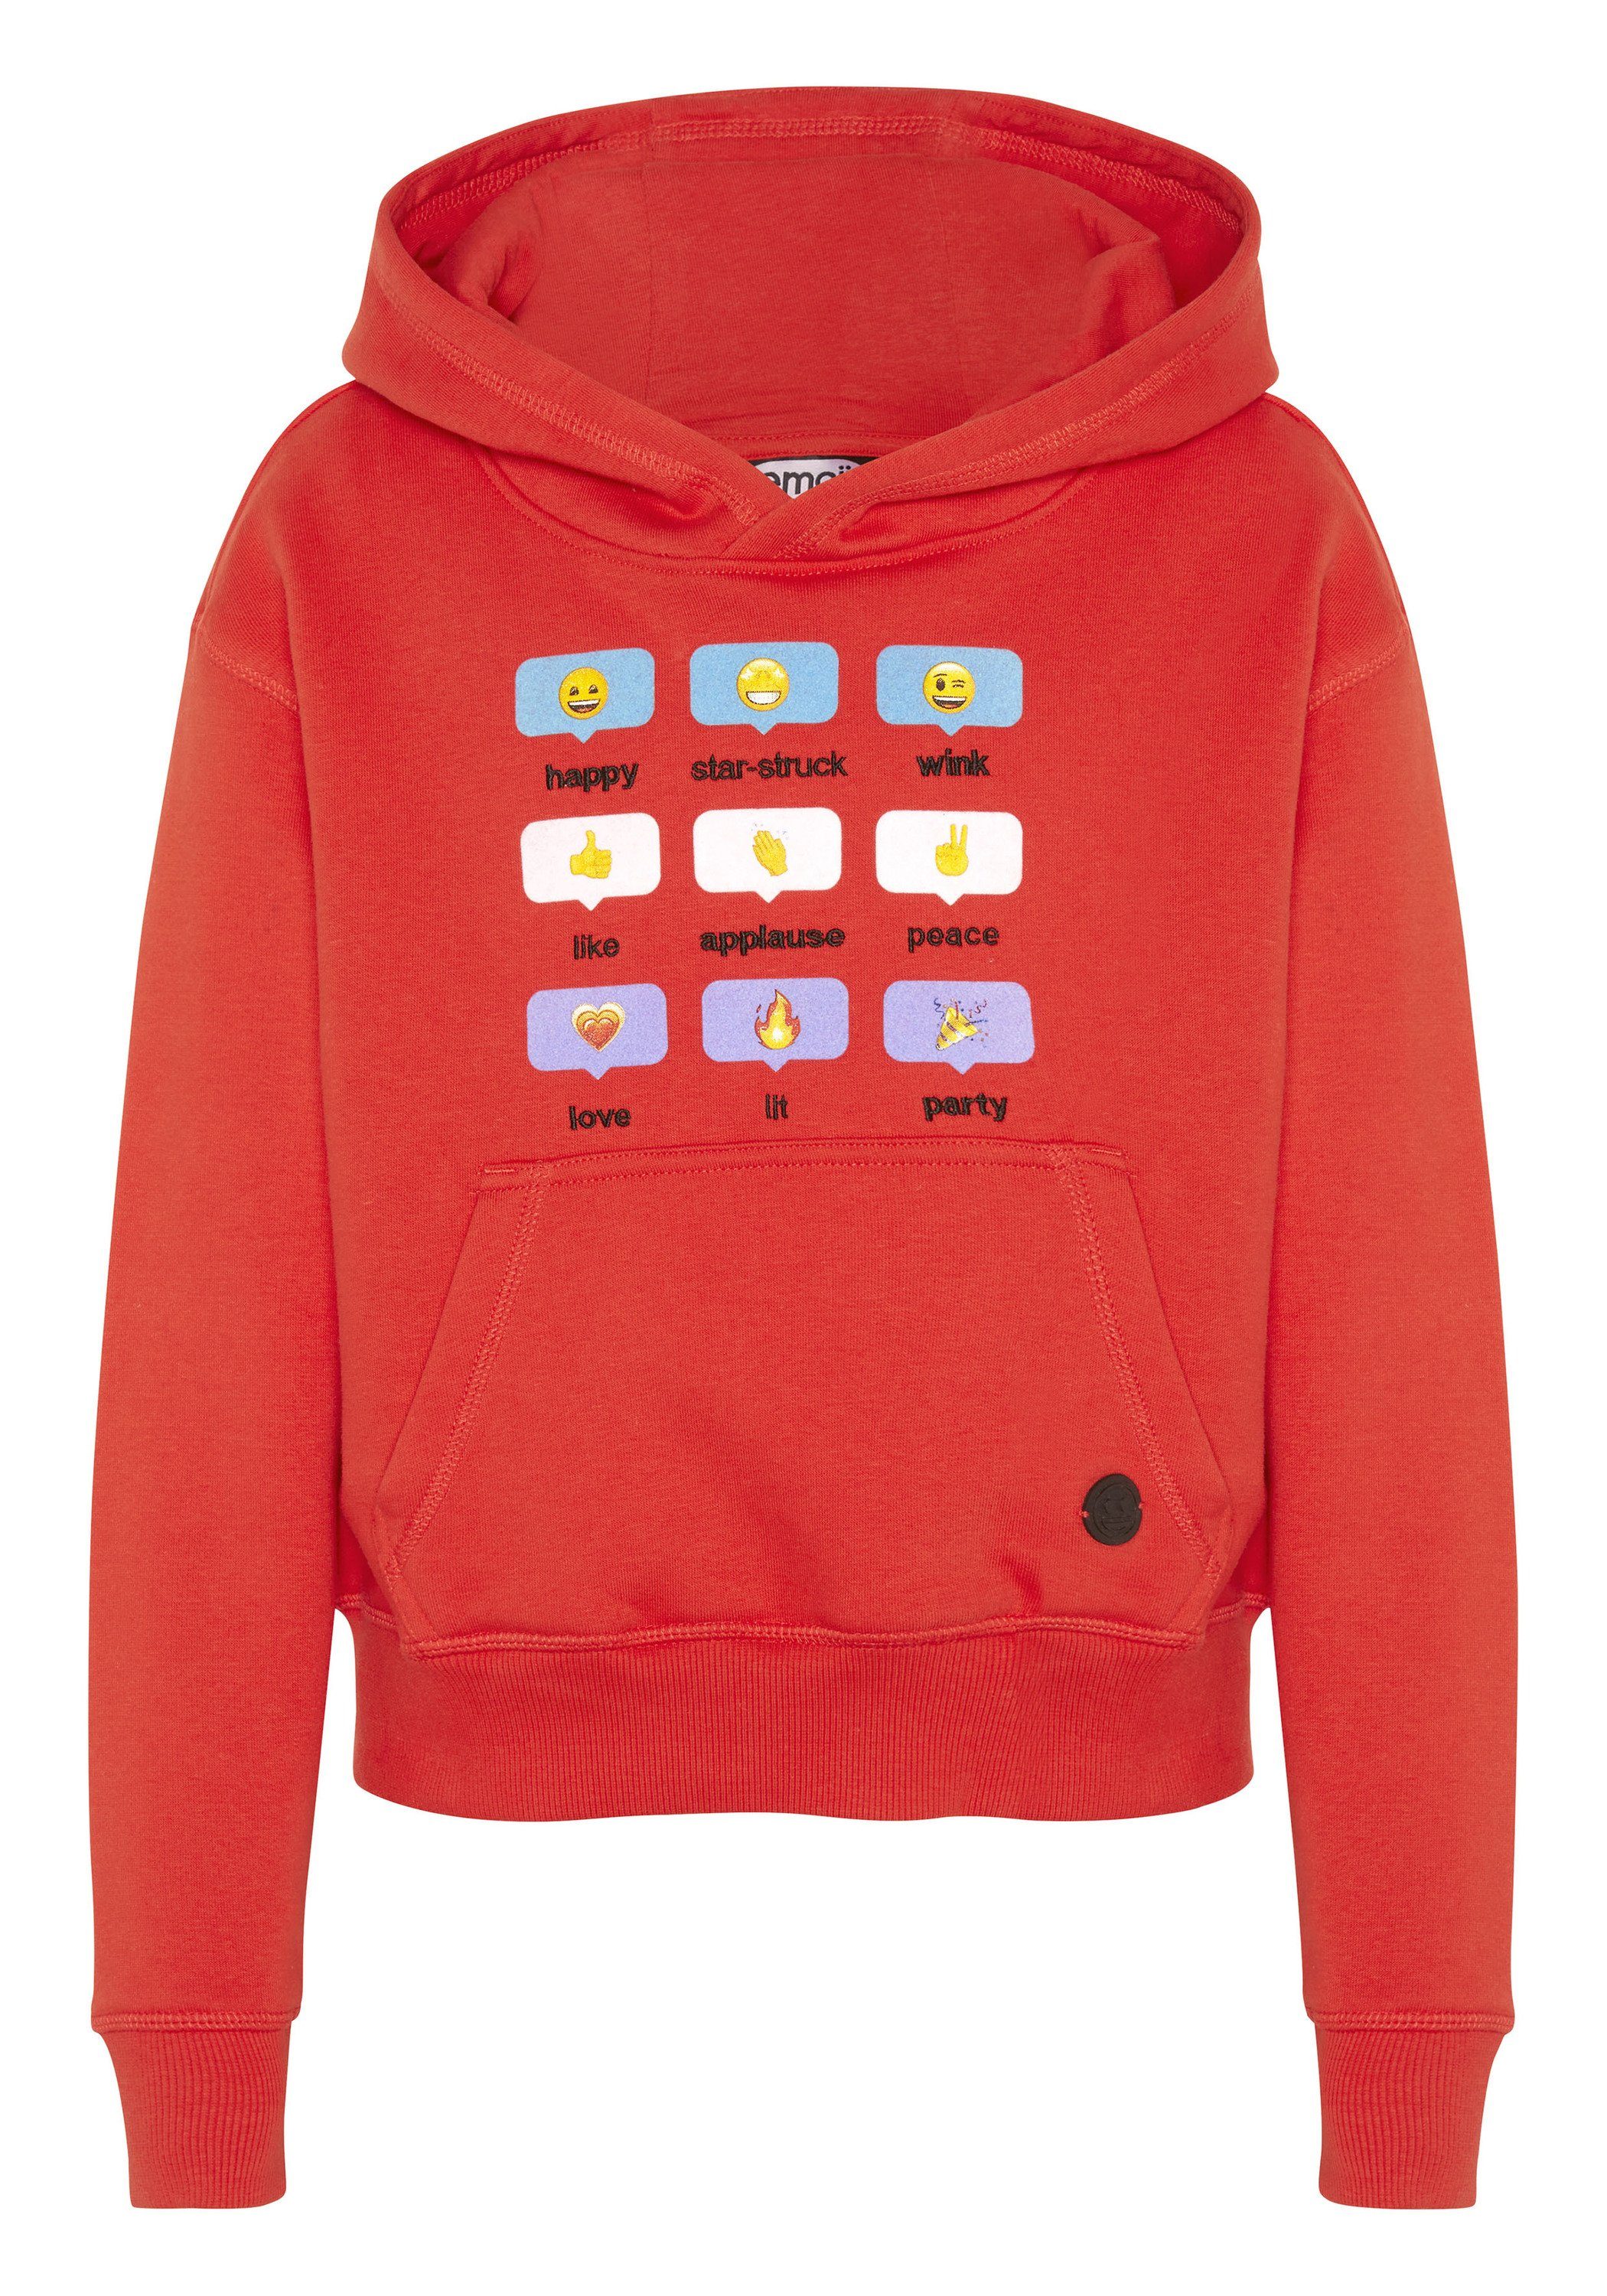 Grinsegesicht-Motiven mit Co Sweatshirt und Emoji